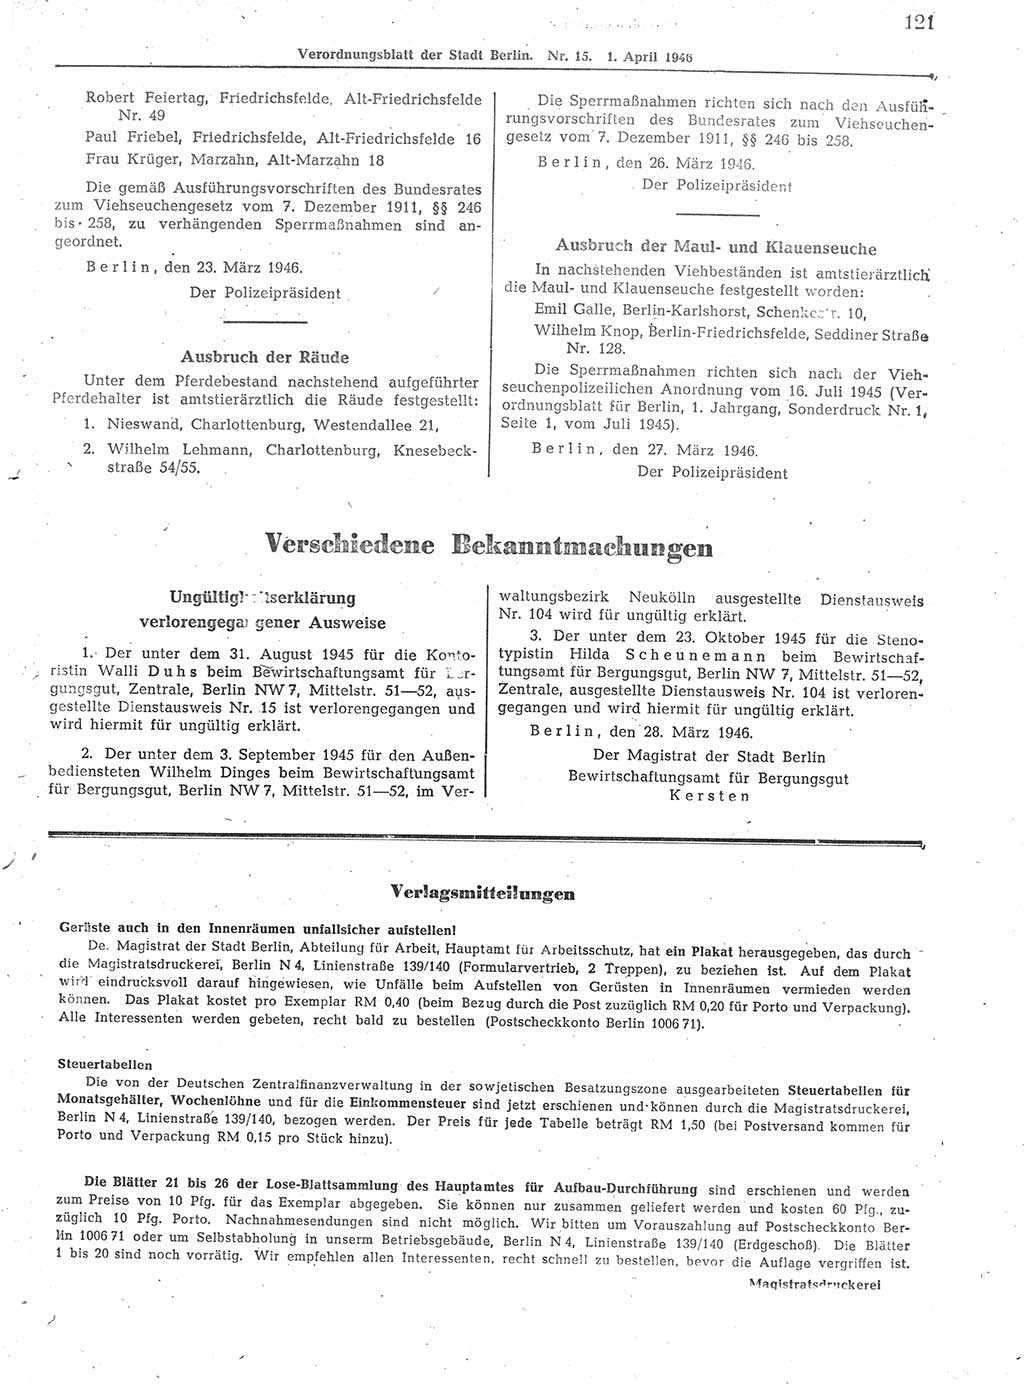 Verordnungsblatt (VOBl.) der Stadt Berlin, für Groß-Berlin 1946, Seite 121 (VOBl. Bln. 1946, S. 121)